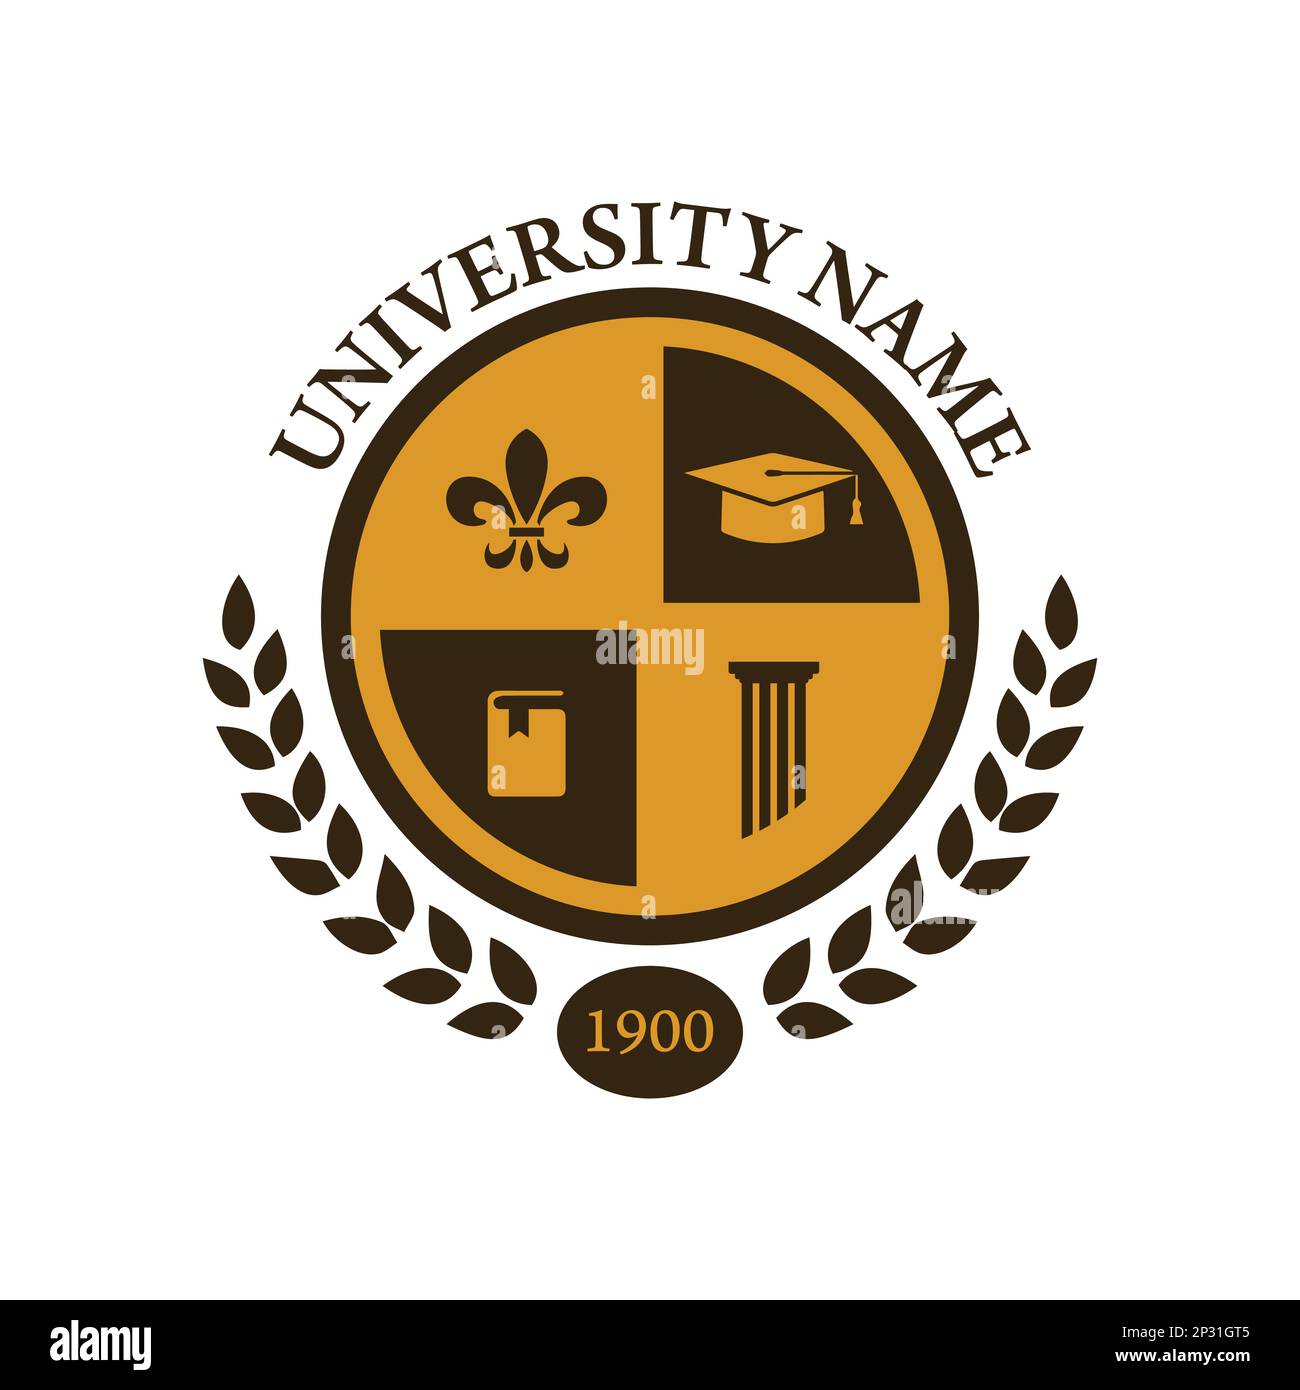 Image vectorielle de conception de logo de badge d'école d'université. Logo du badge Education. Emblème du lycée de l'université Illustration de Vecteur